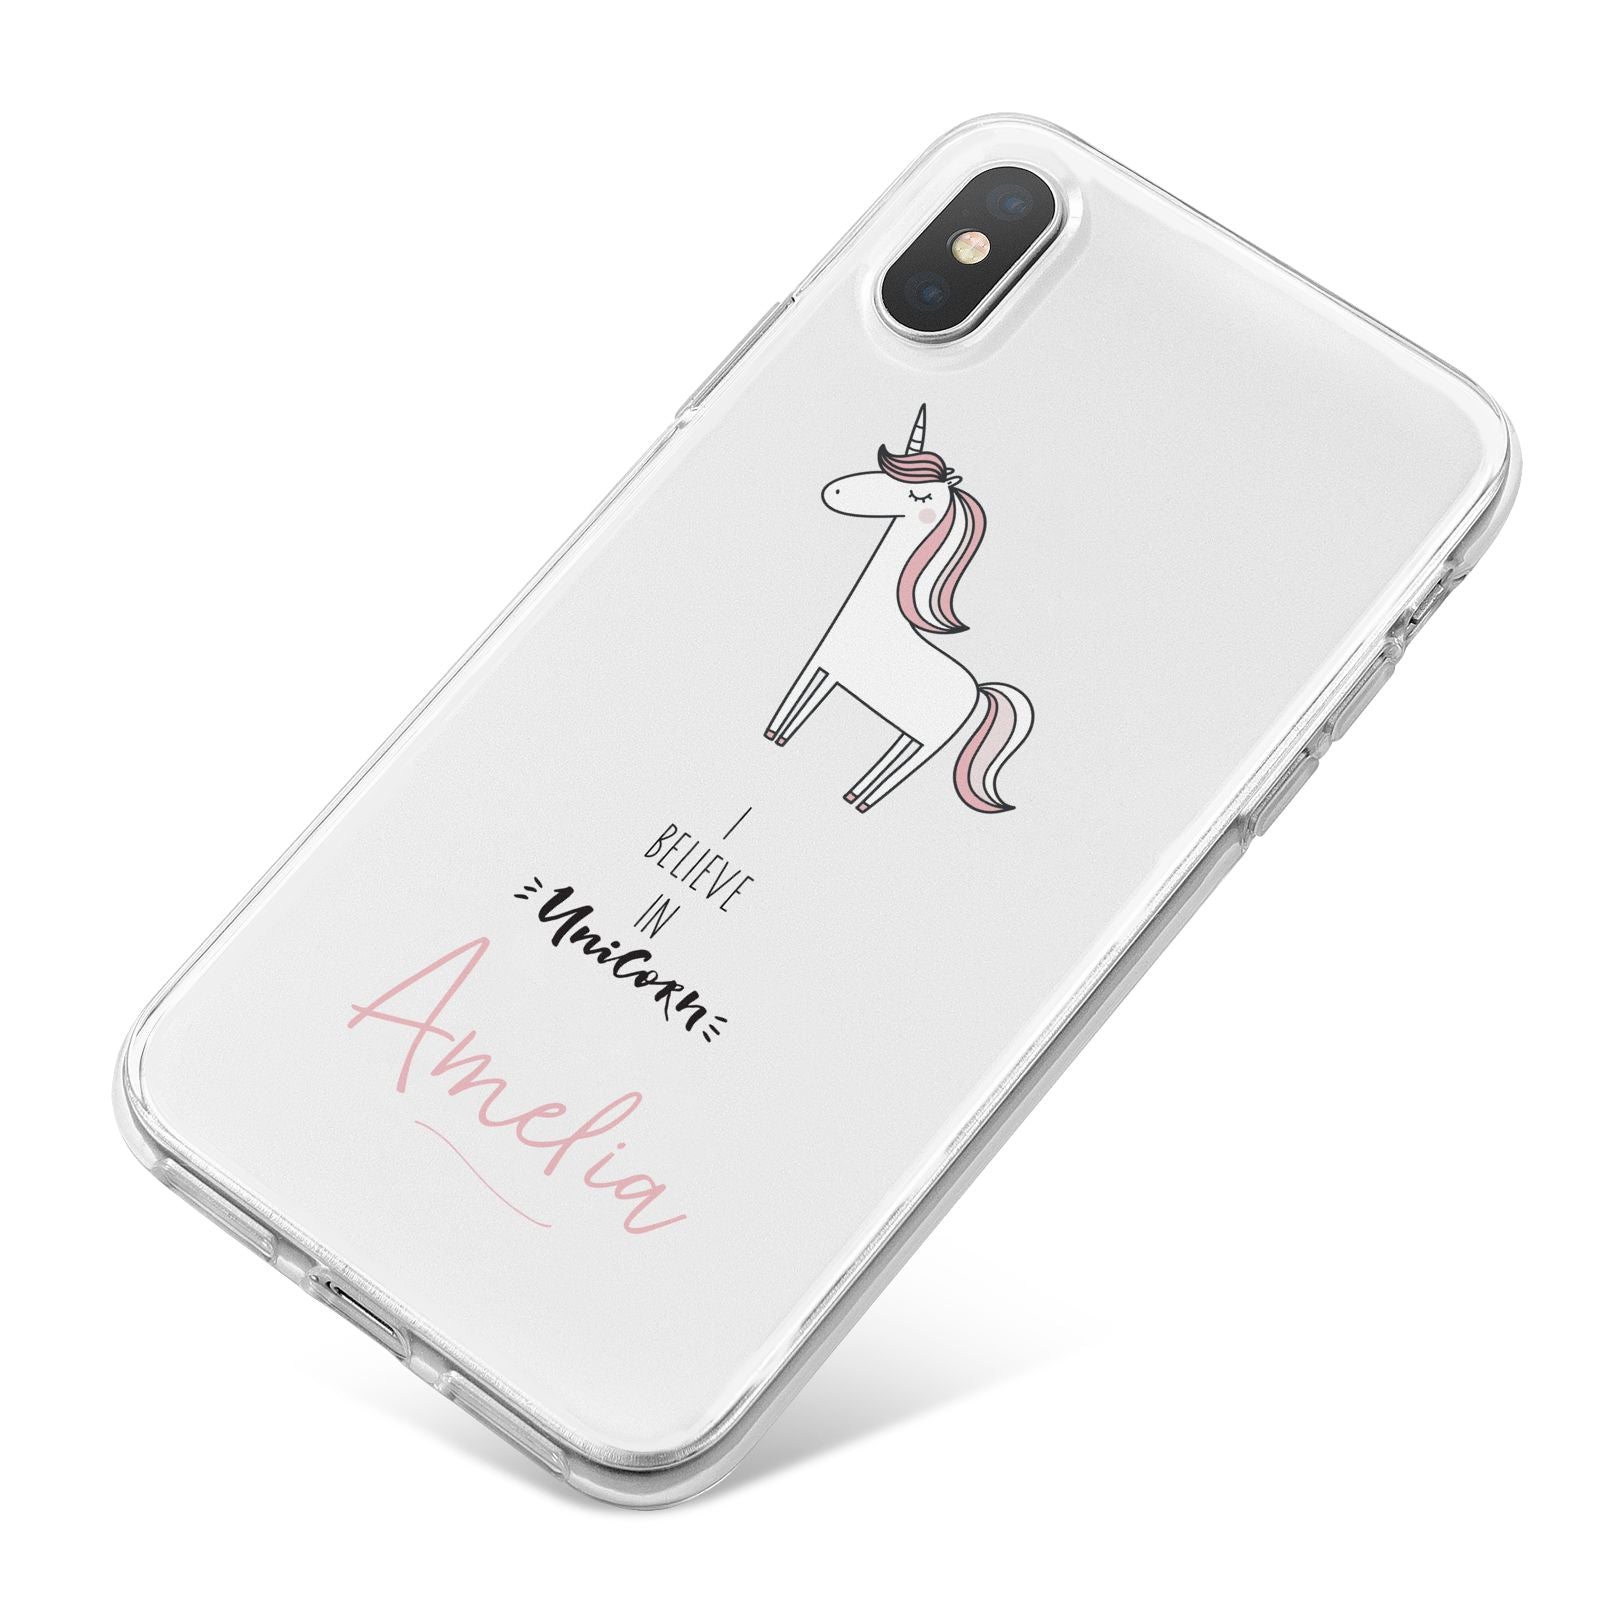 I Believe in Unicorn iPhone X Bumper Case on Silver iPhone